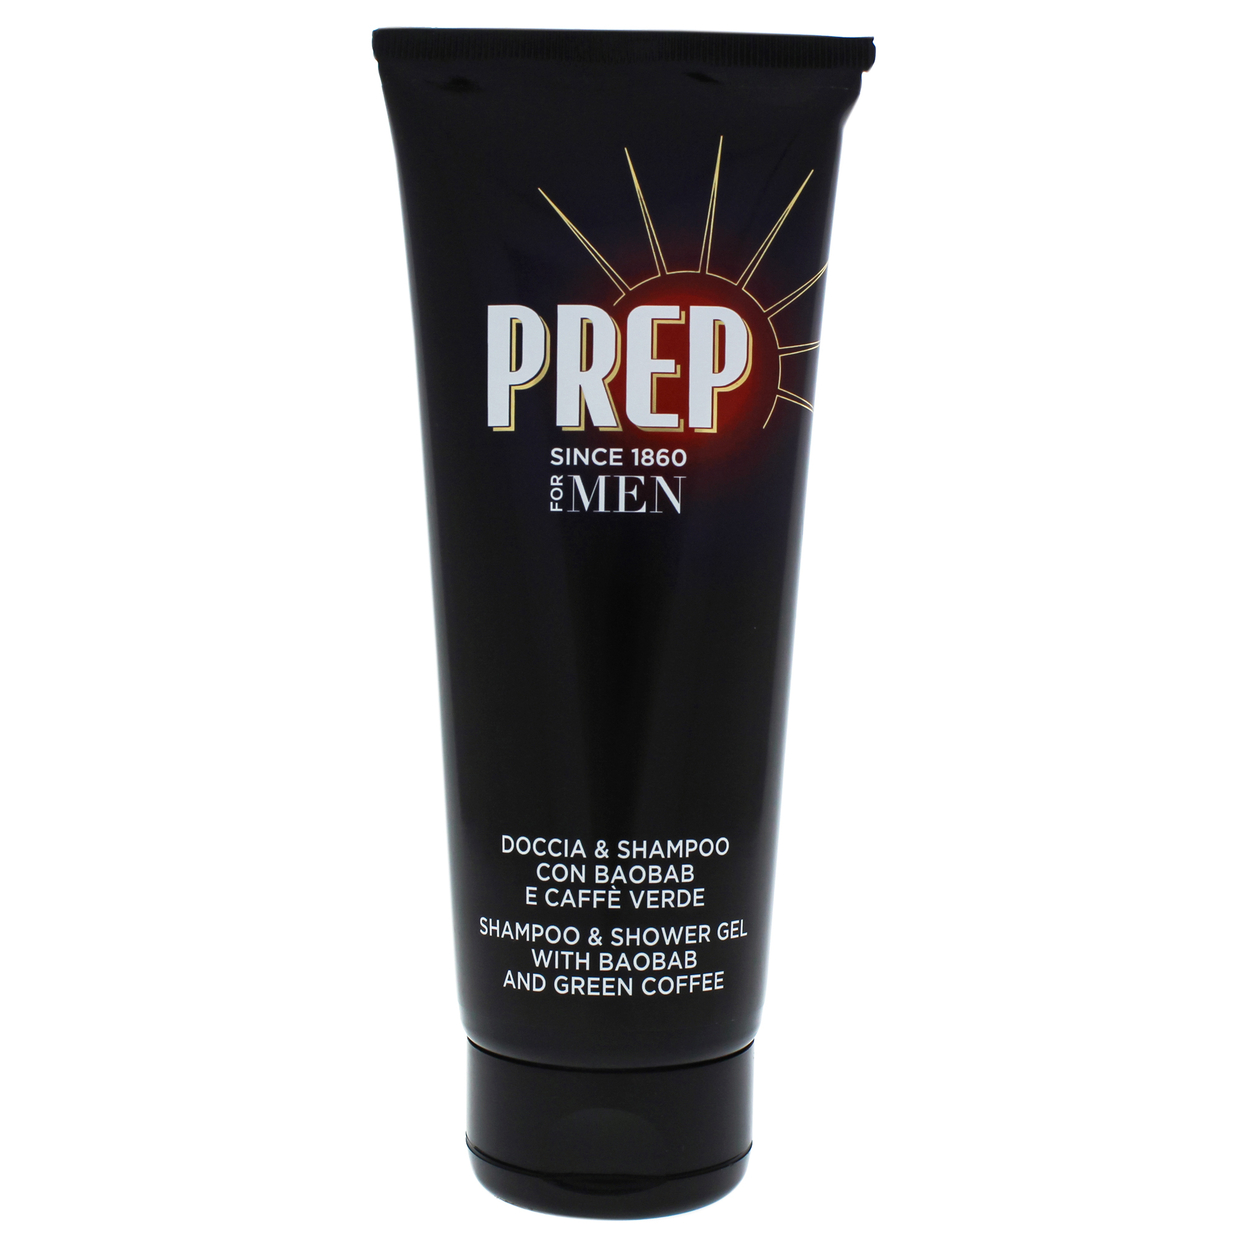 Prep Shampoo And Shower Gel 6.8 Oz